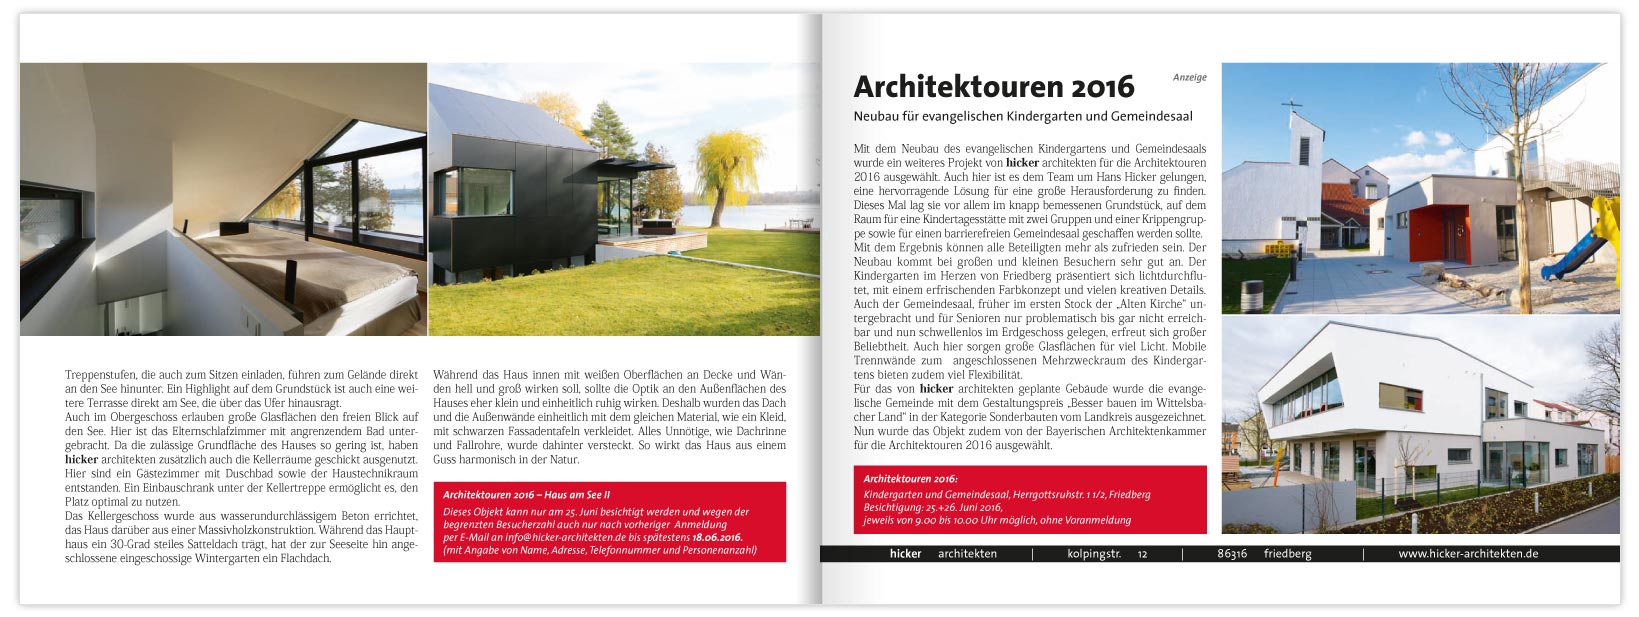 Hicker architekten Presse Zeitungsartikel den Architektouren 2016